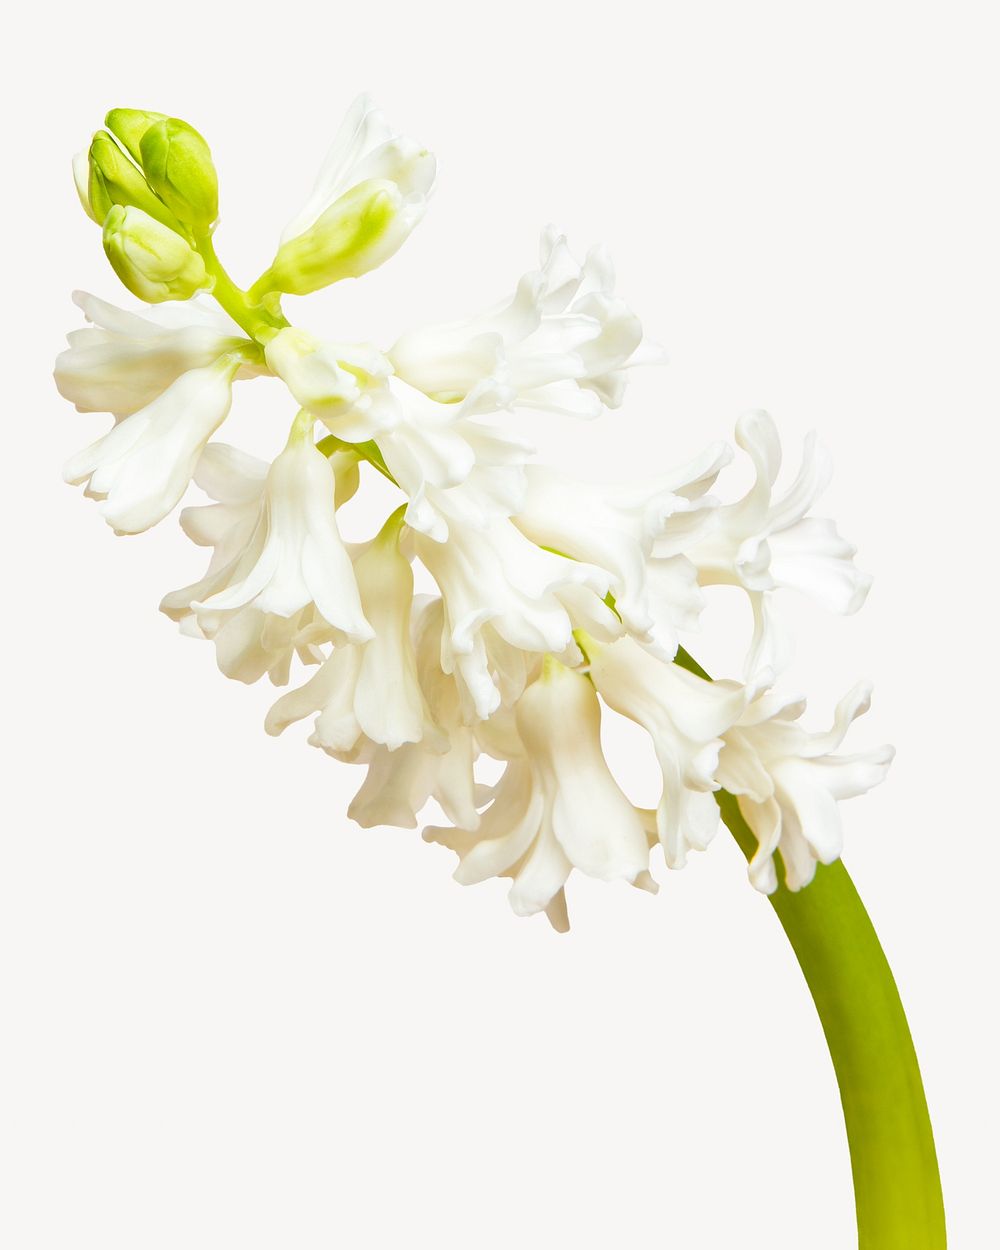 White hyacinths flower isolated image